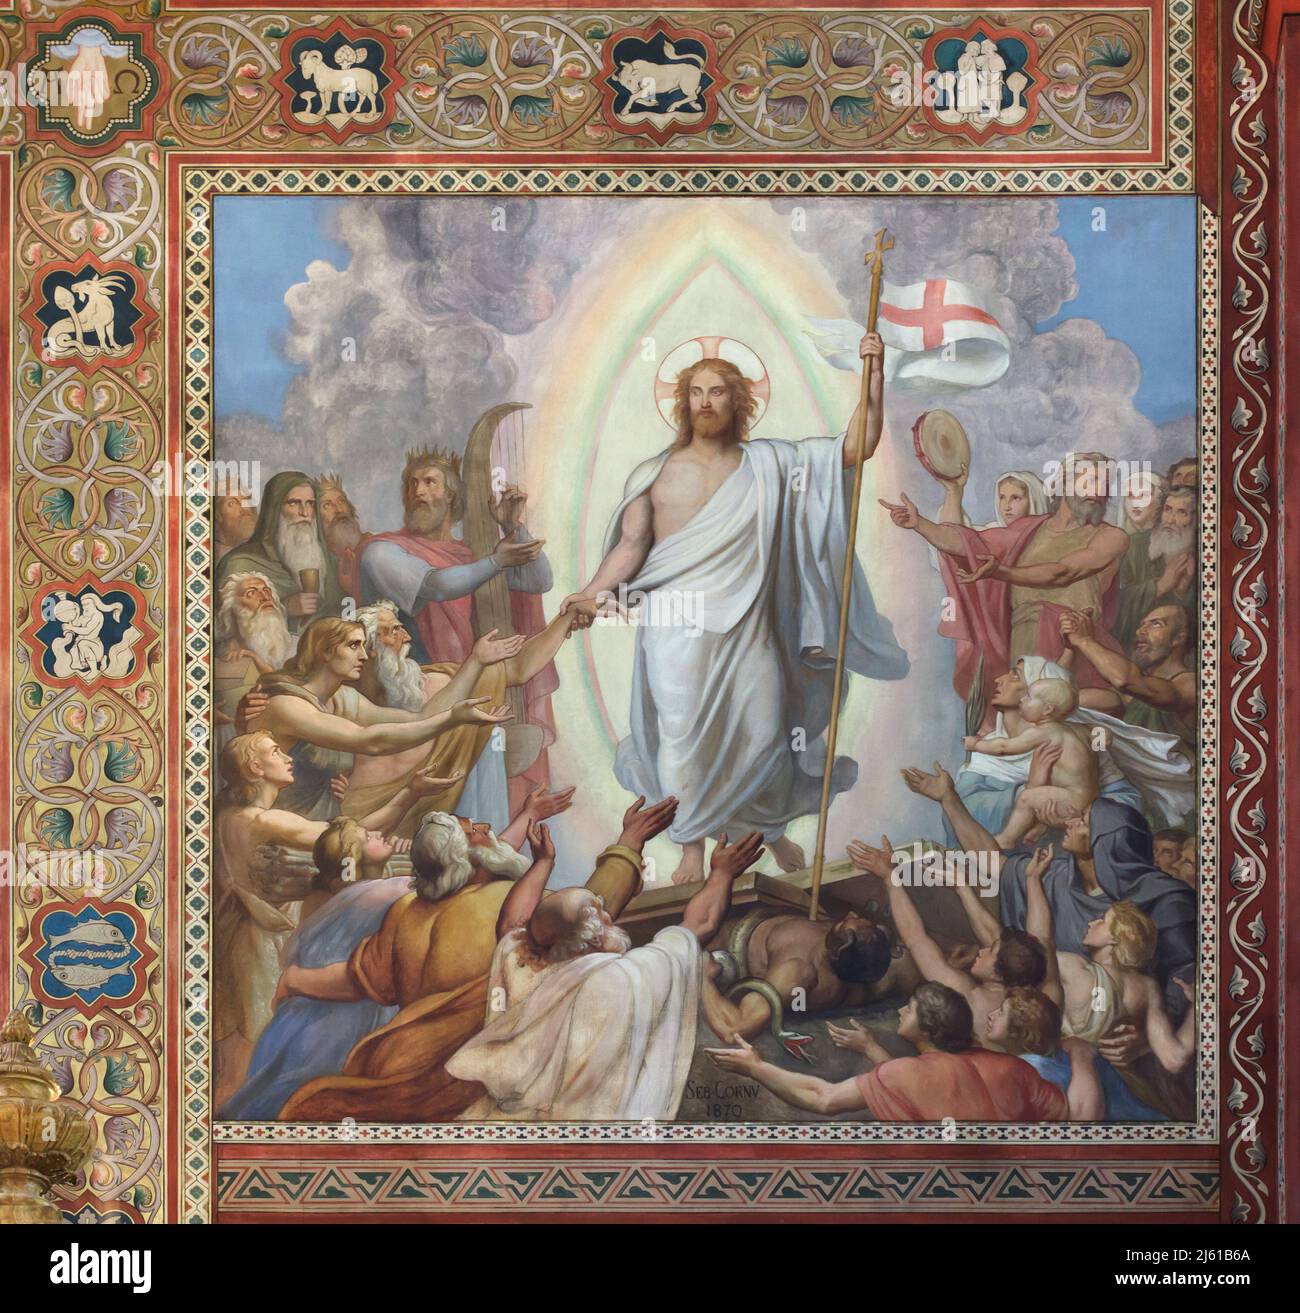 Descente dans Limbo. Peinture murale du peintre français Sébastien-Melchior Cornu (1870) dans l'église Saint-Germain-des-Prés à Paris, France. Banque D'Images